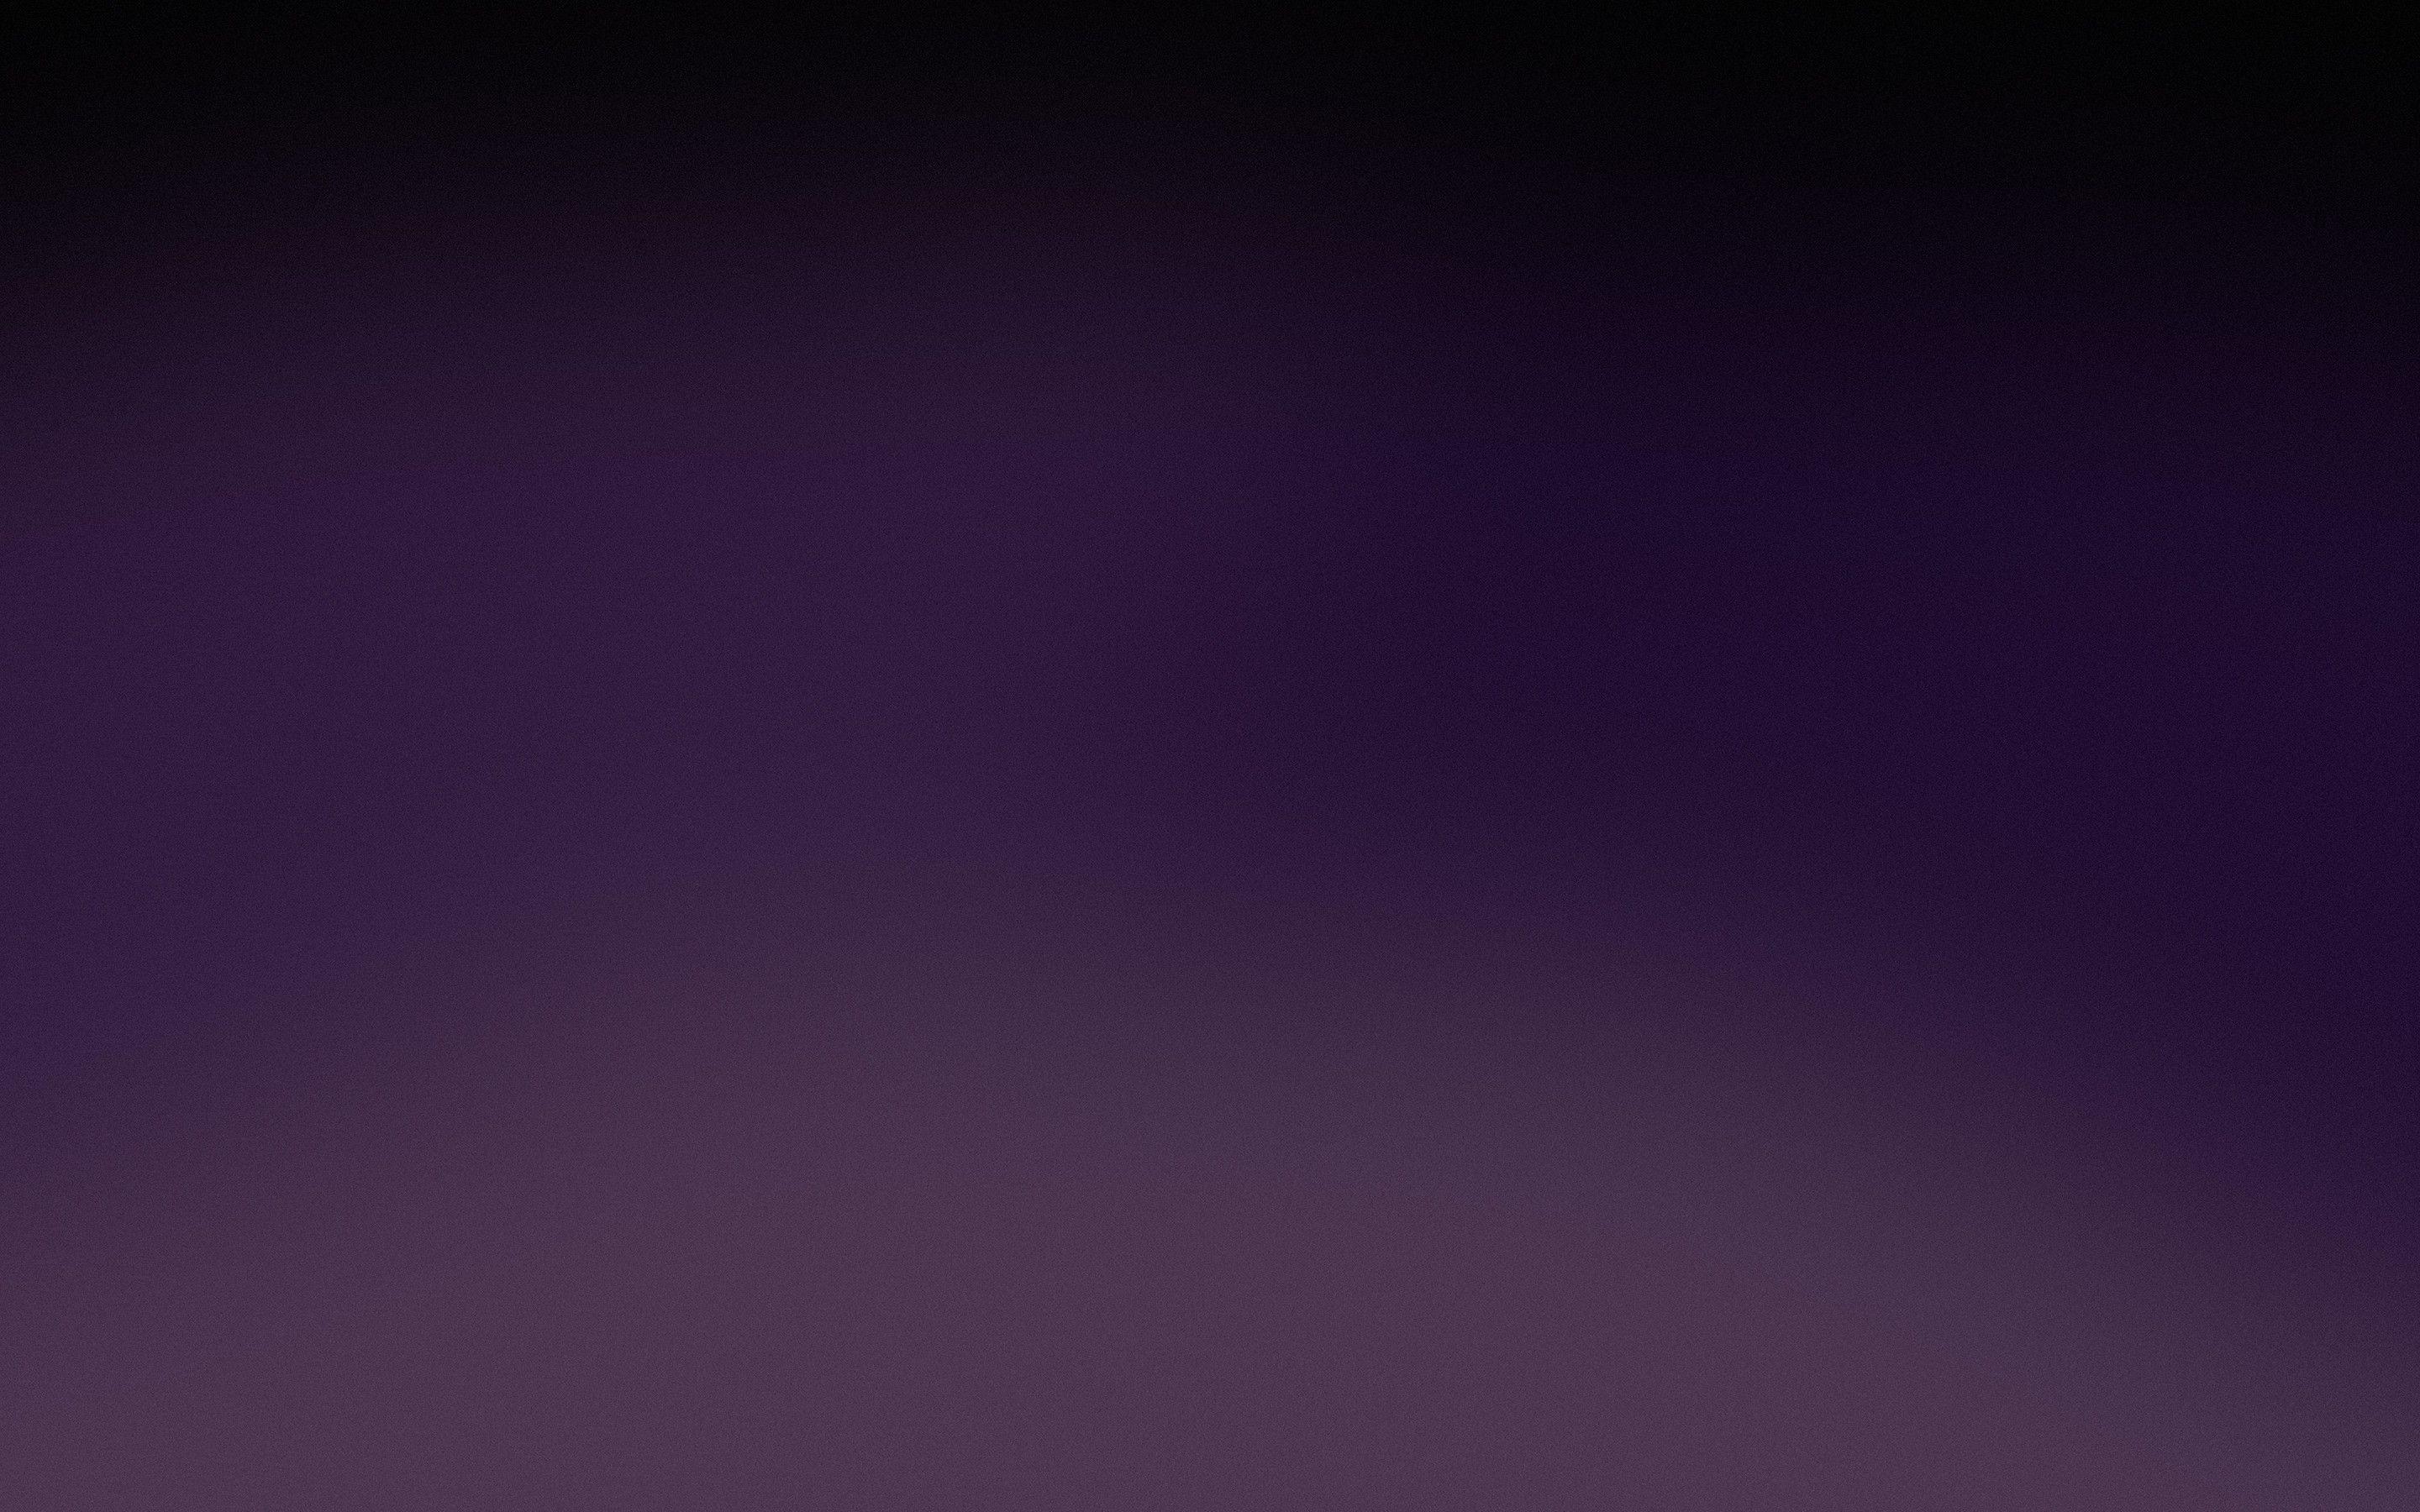 Dark Gradient Background 46248 2880x1800 px